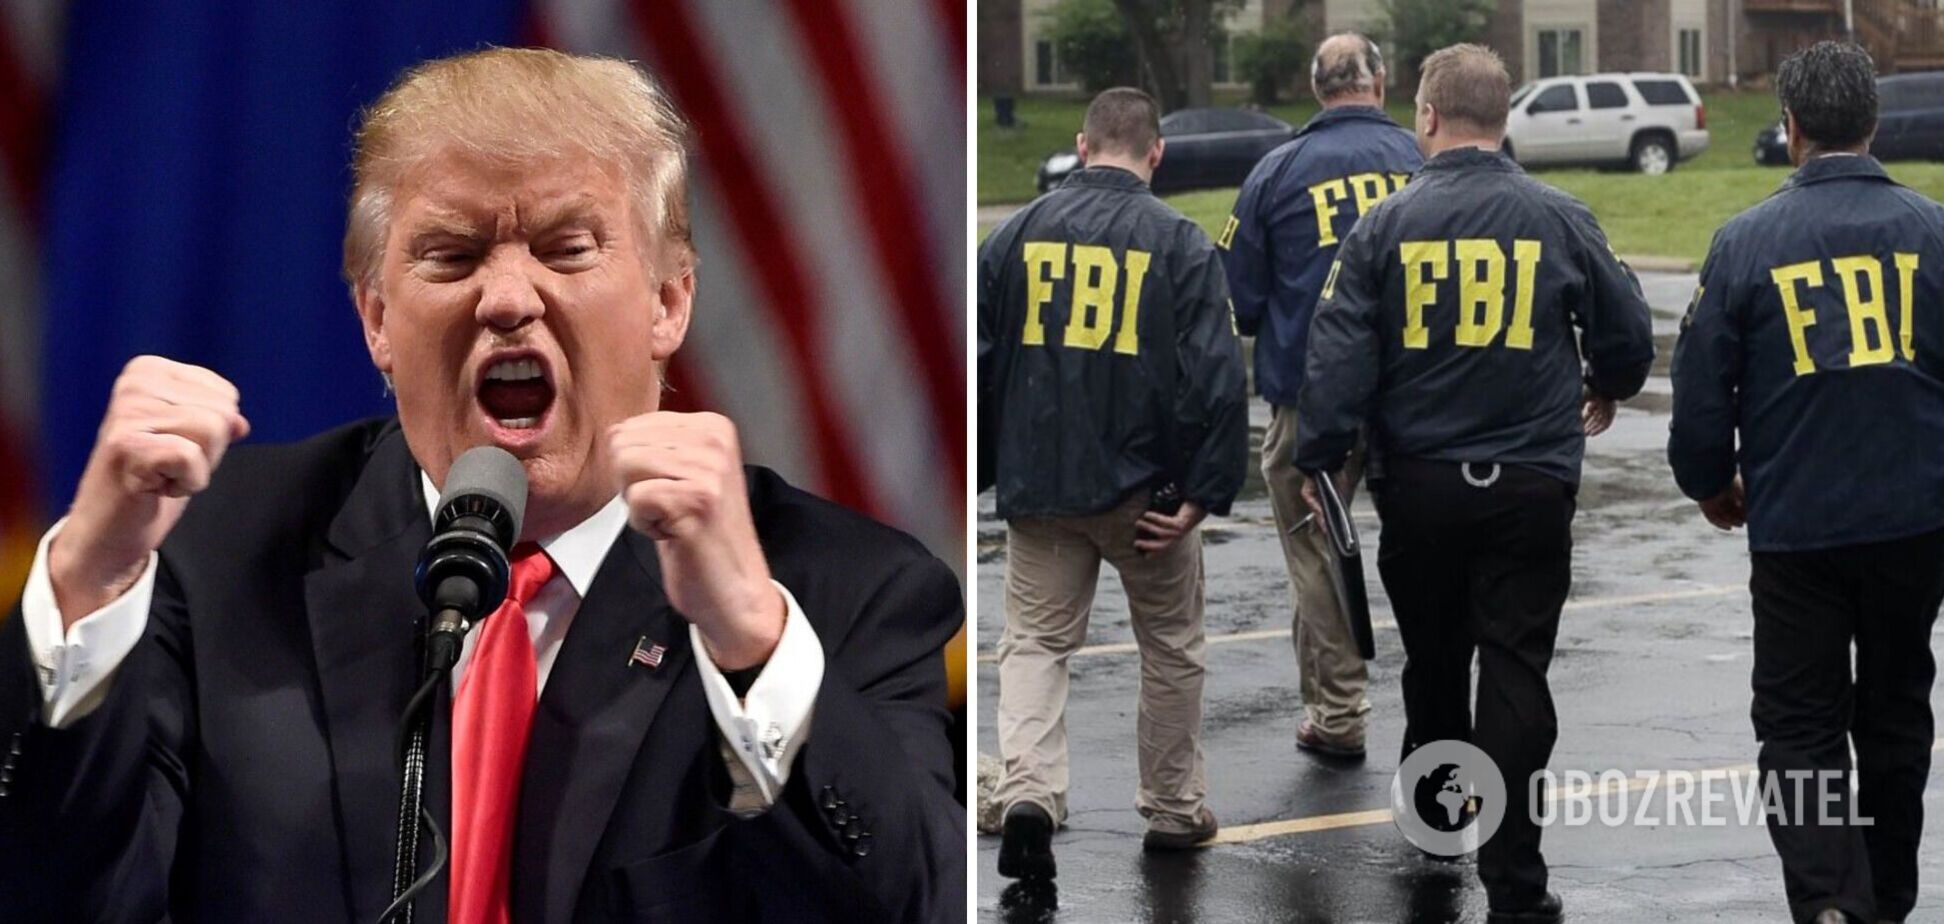 ФБР провело обшуки у резиденції Трампа: він назвав дії силовиків 'нападом' і звинуватив їх у зламі сейфу